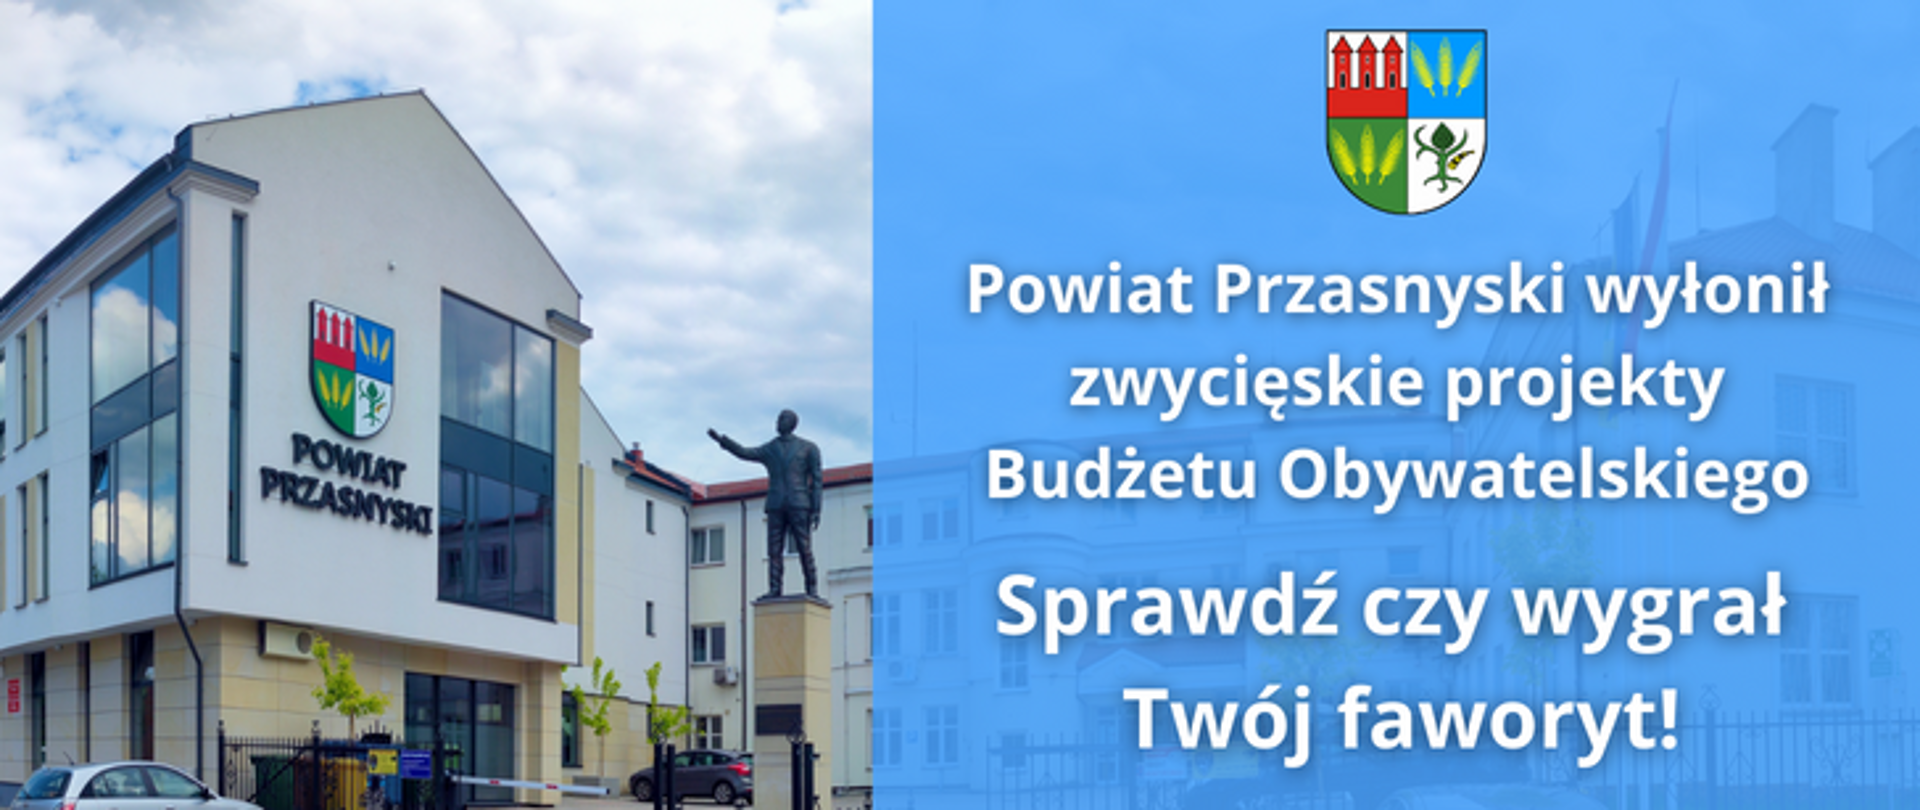 Grafika zachęca do zapoznania się z wynikami głosowania nad projektami zgłoszonymi przez mieszkańców powiatu przasnyskiego w ramach Budżetu Obywatelskiego.